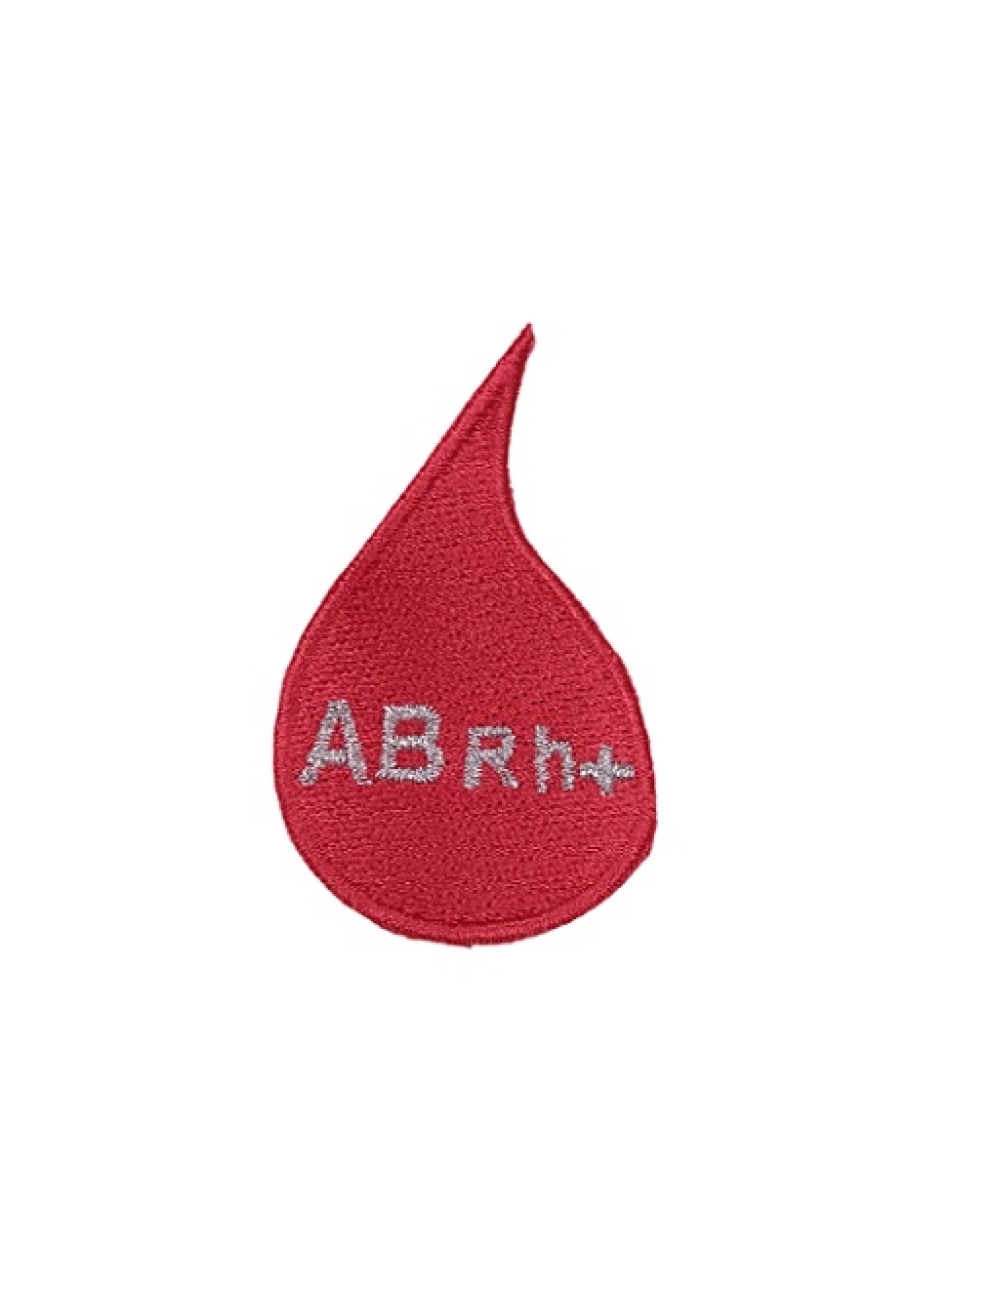 Gota de Sangue - AB RH +